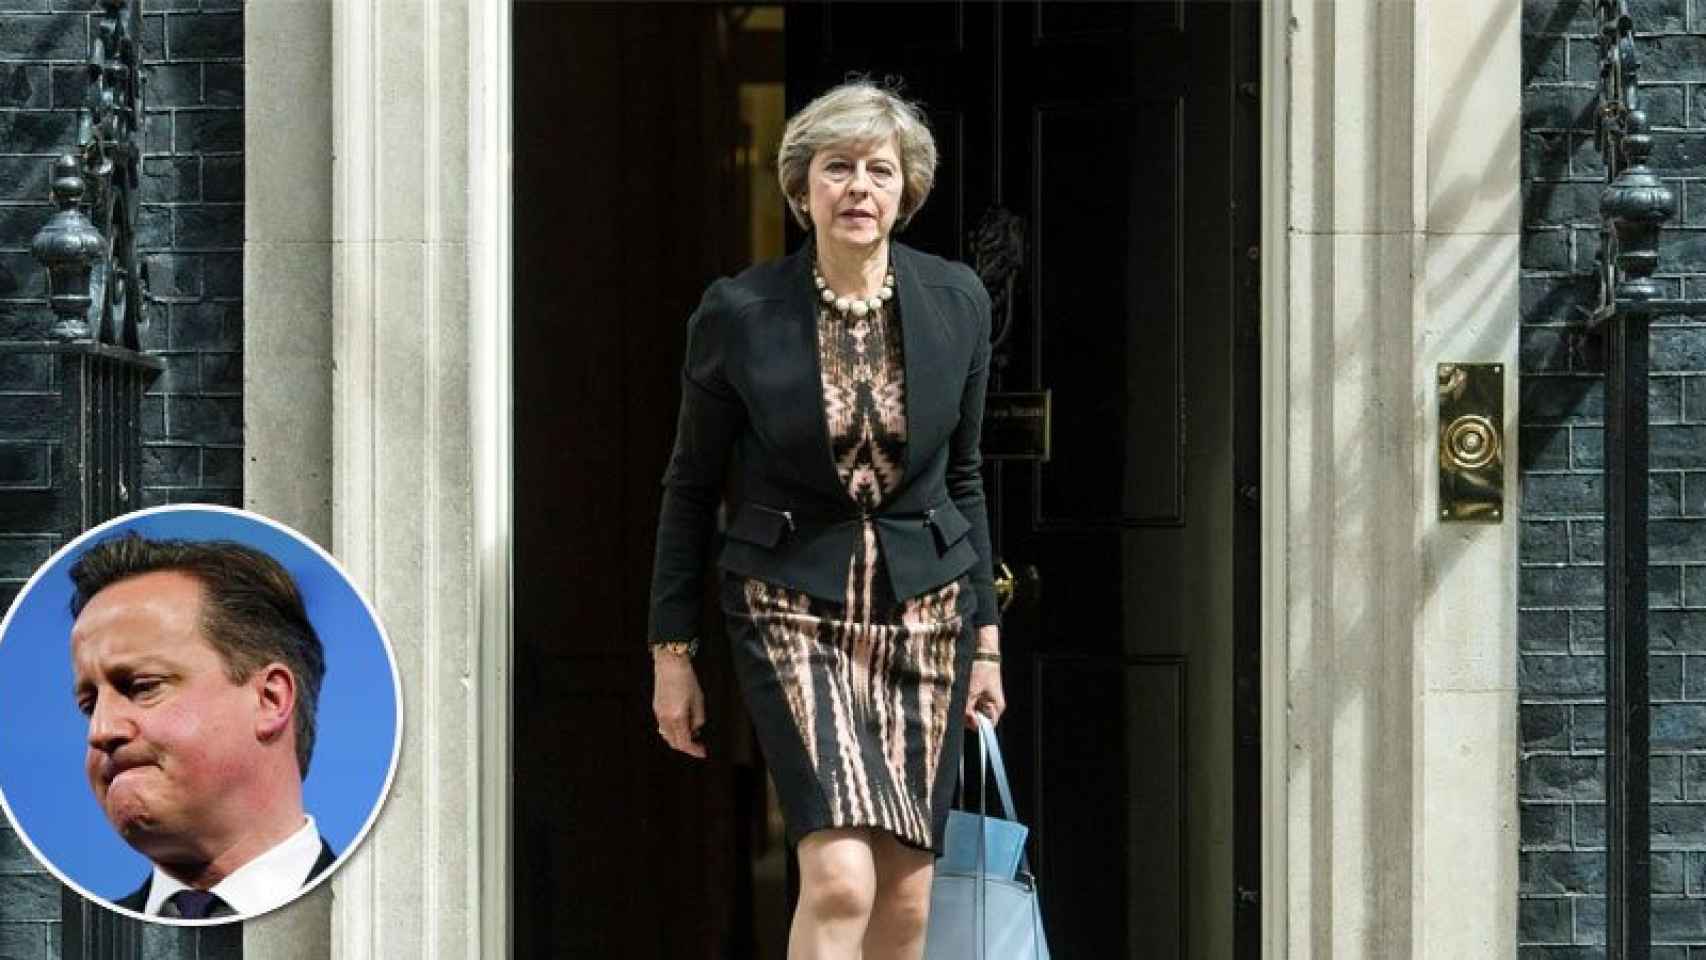 Thersa May en la puerta del número 10 de Downing Street, residencia del primer ministro británico, y el hasta ahora líder del país, David Cameron.